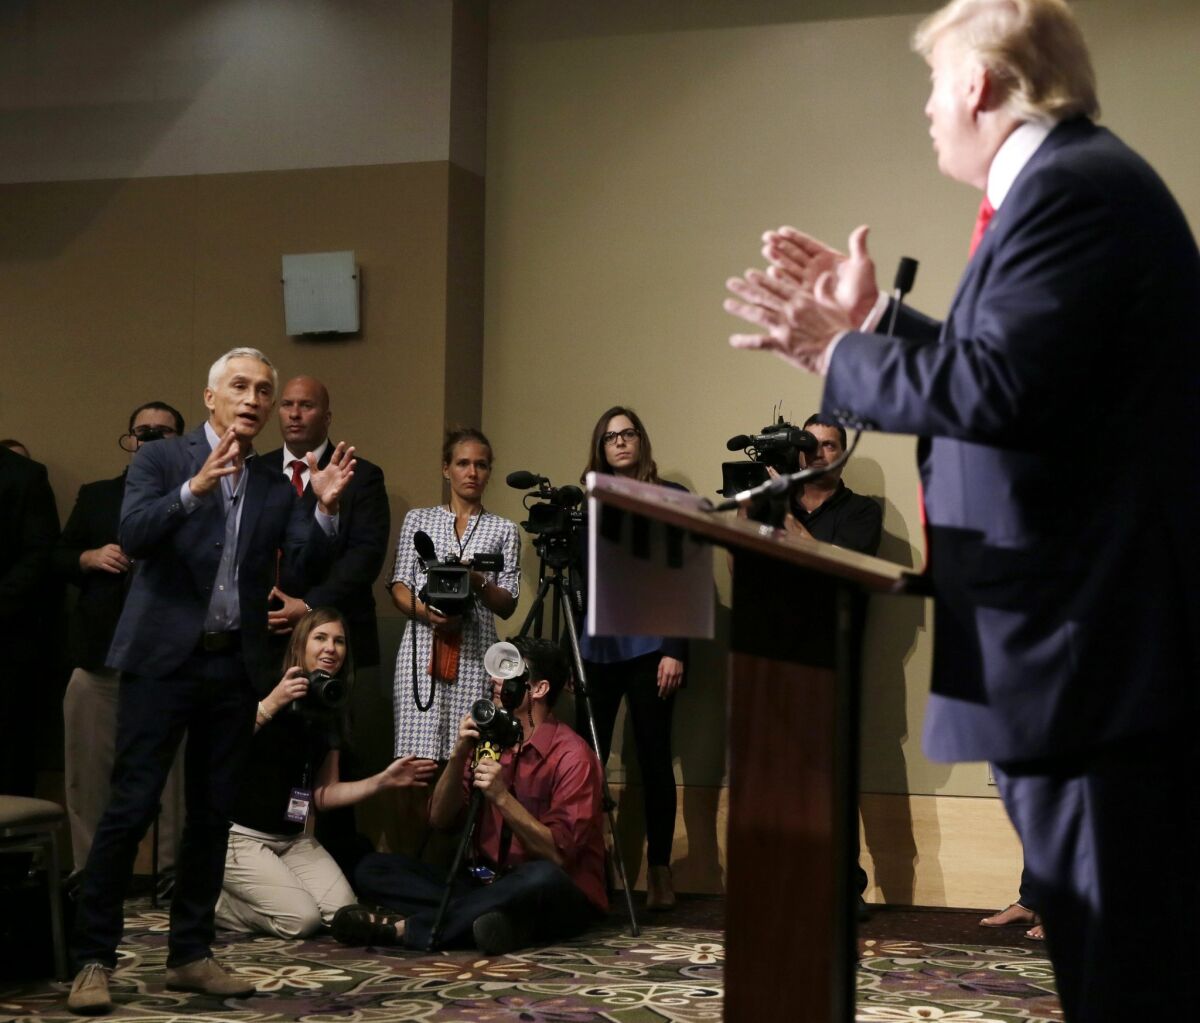 Jorge Ramos frente a Donald Trump en la conferencia de Iowa, donde fue expulsado en el 2015.